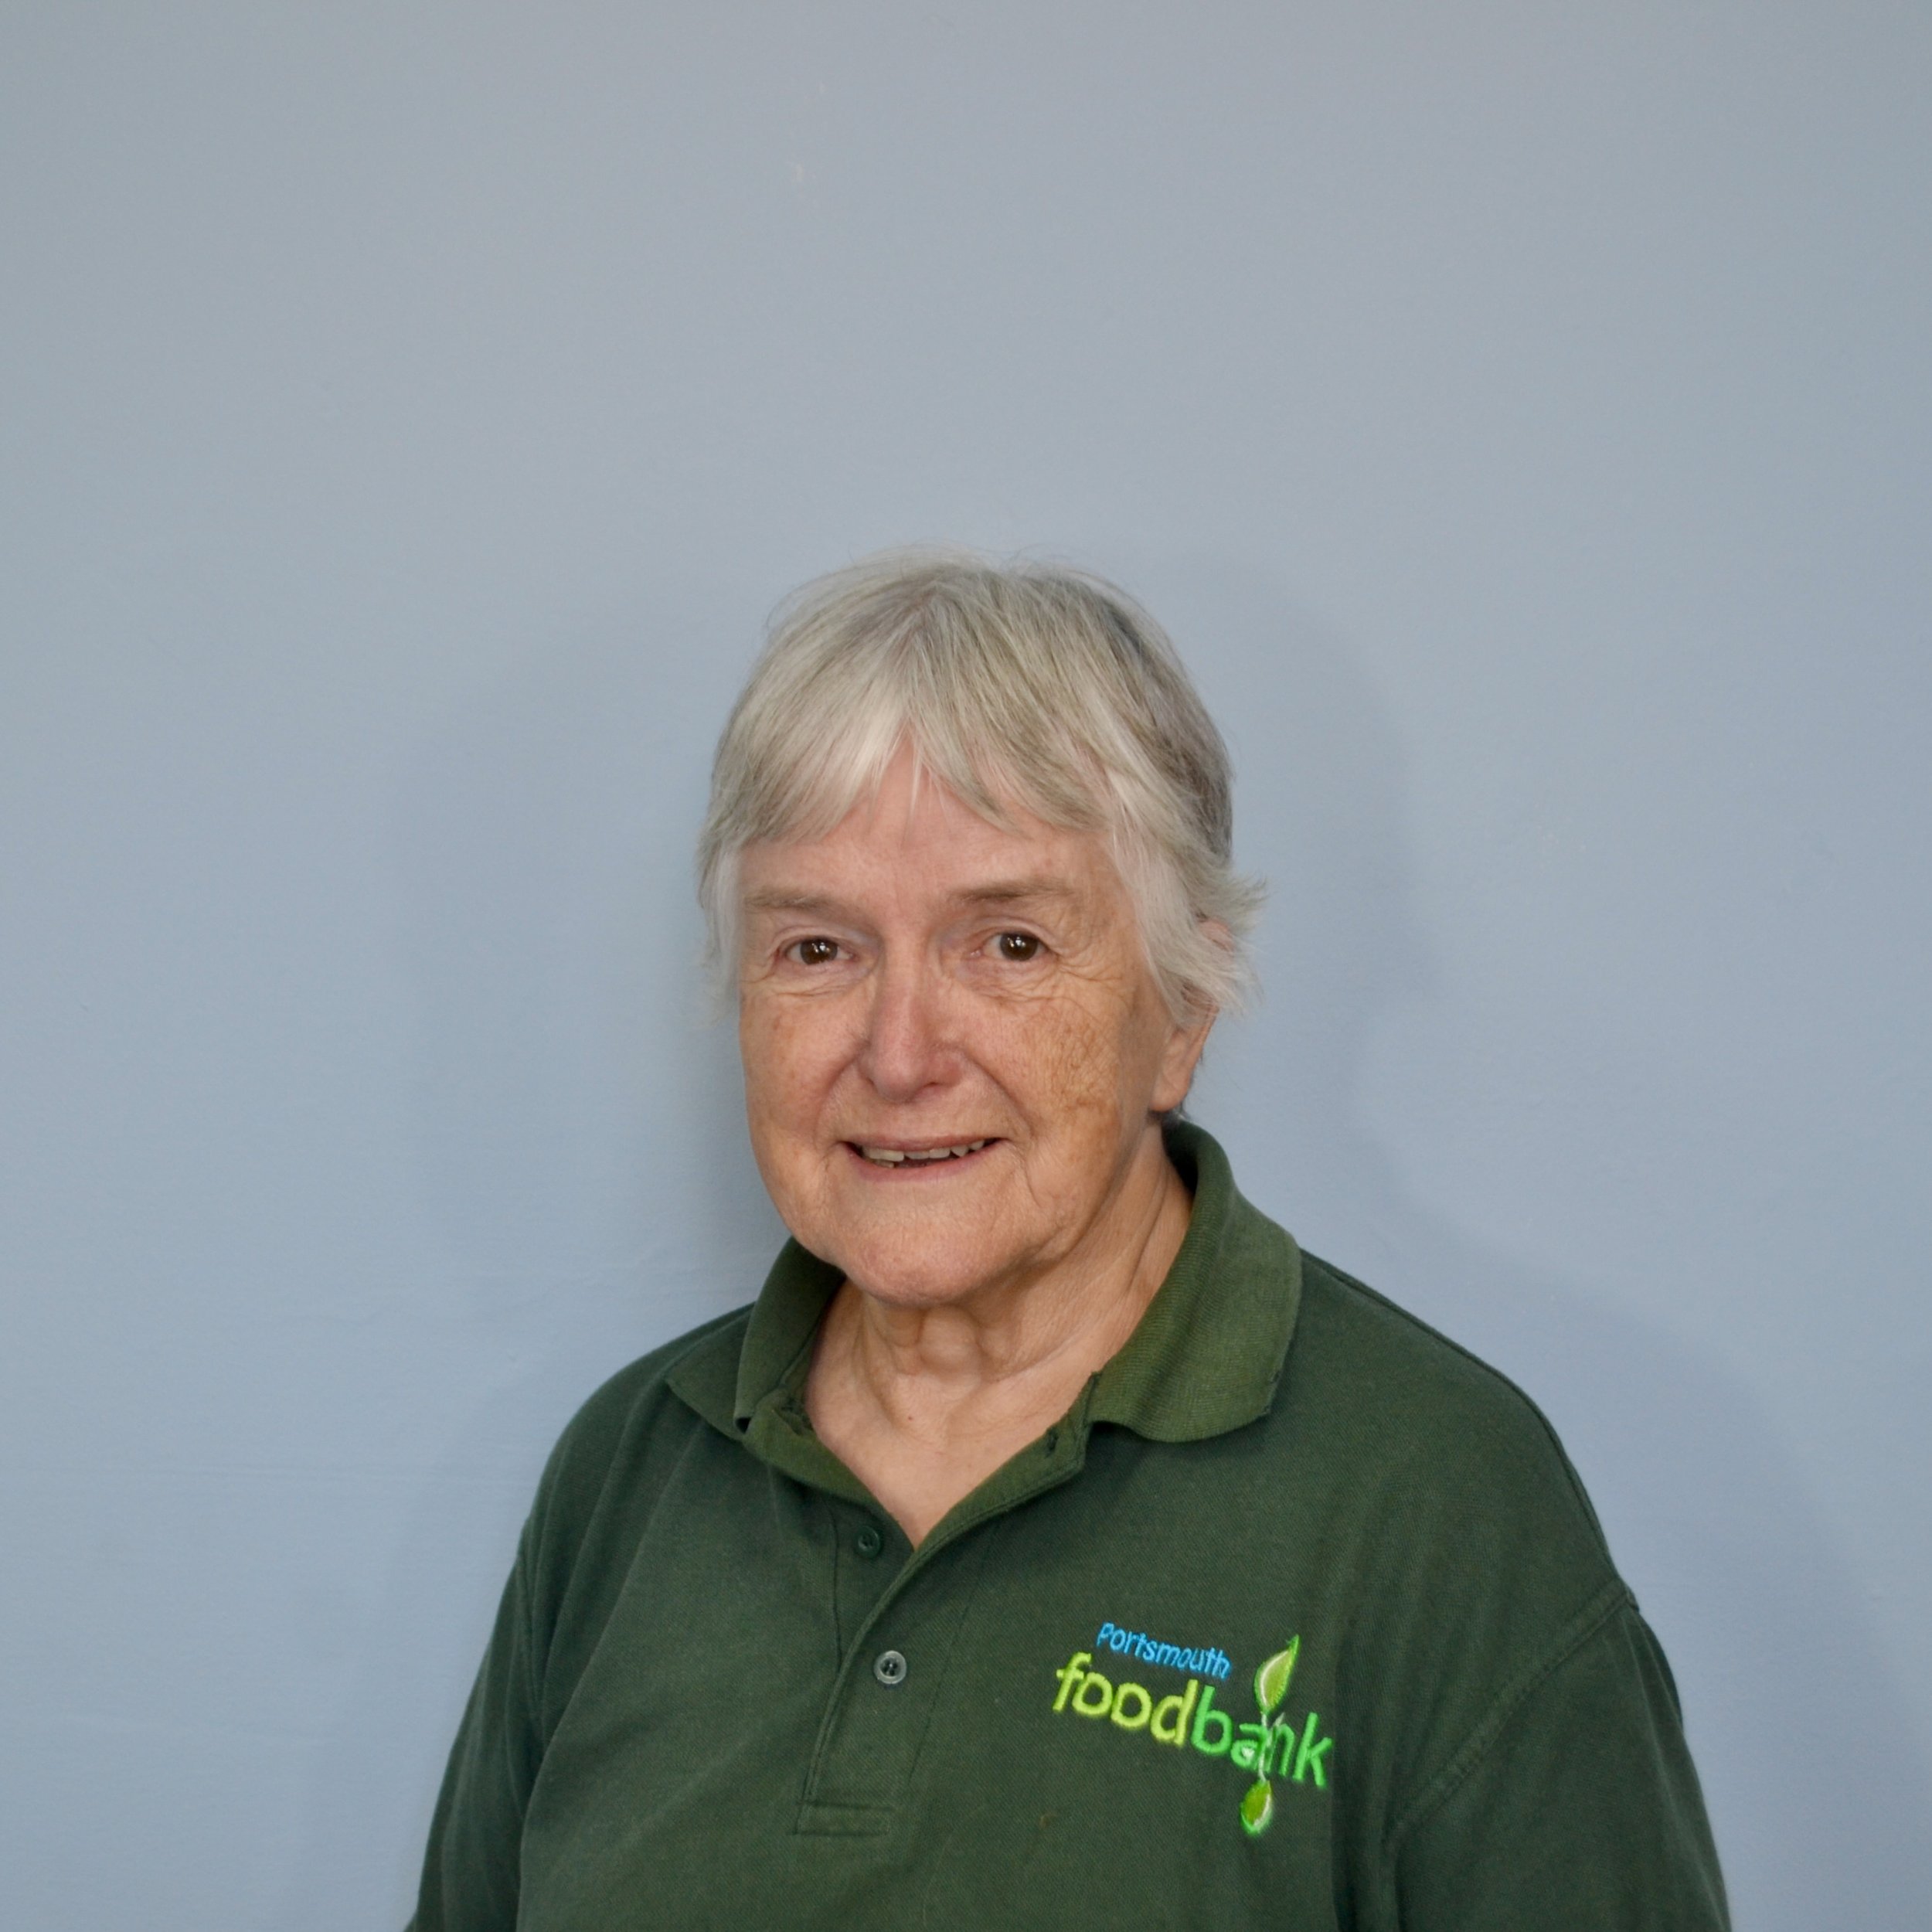 Jackie - Foodbank Volunteer Manager